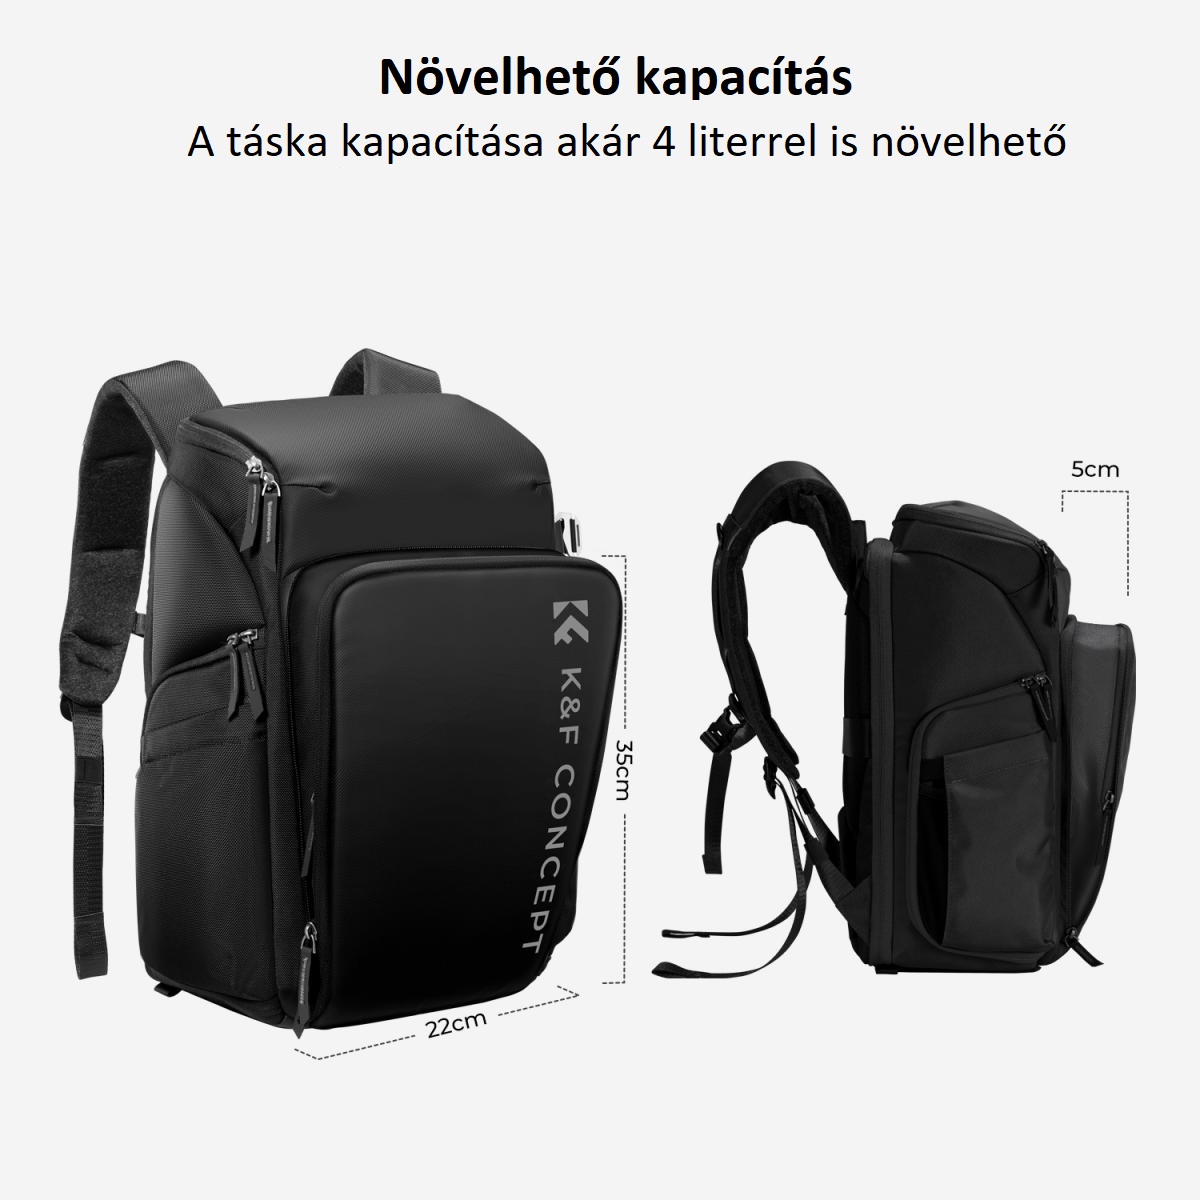 K&F Concept Alpha Air fotós hátizsák 25L, fekete